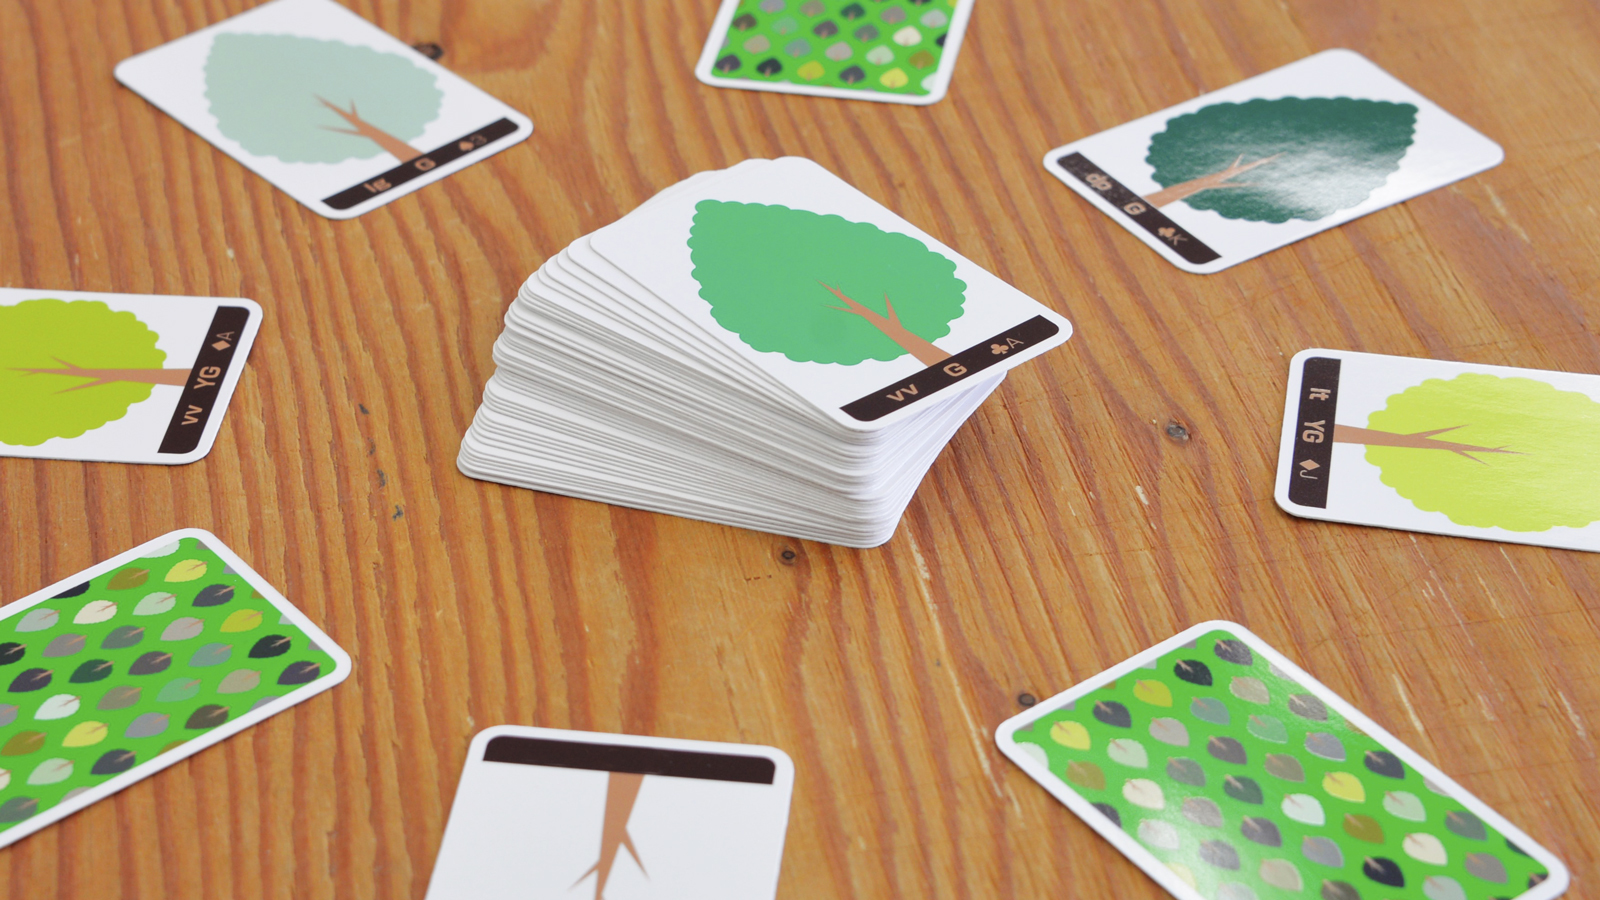 環境配慮型ボードゲーム『ヨリドリミドリ』のプロジェクトを
Makuakeにて実施　森林について考えるきっかけづくりを